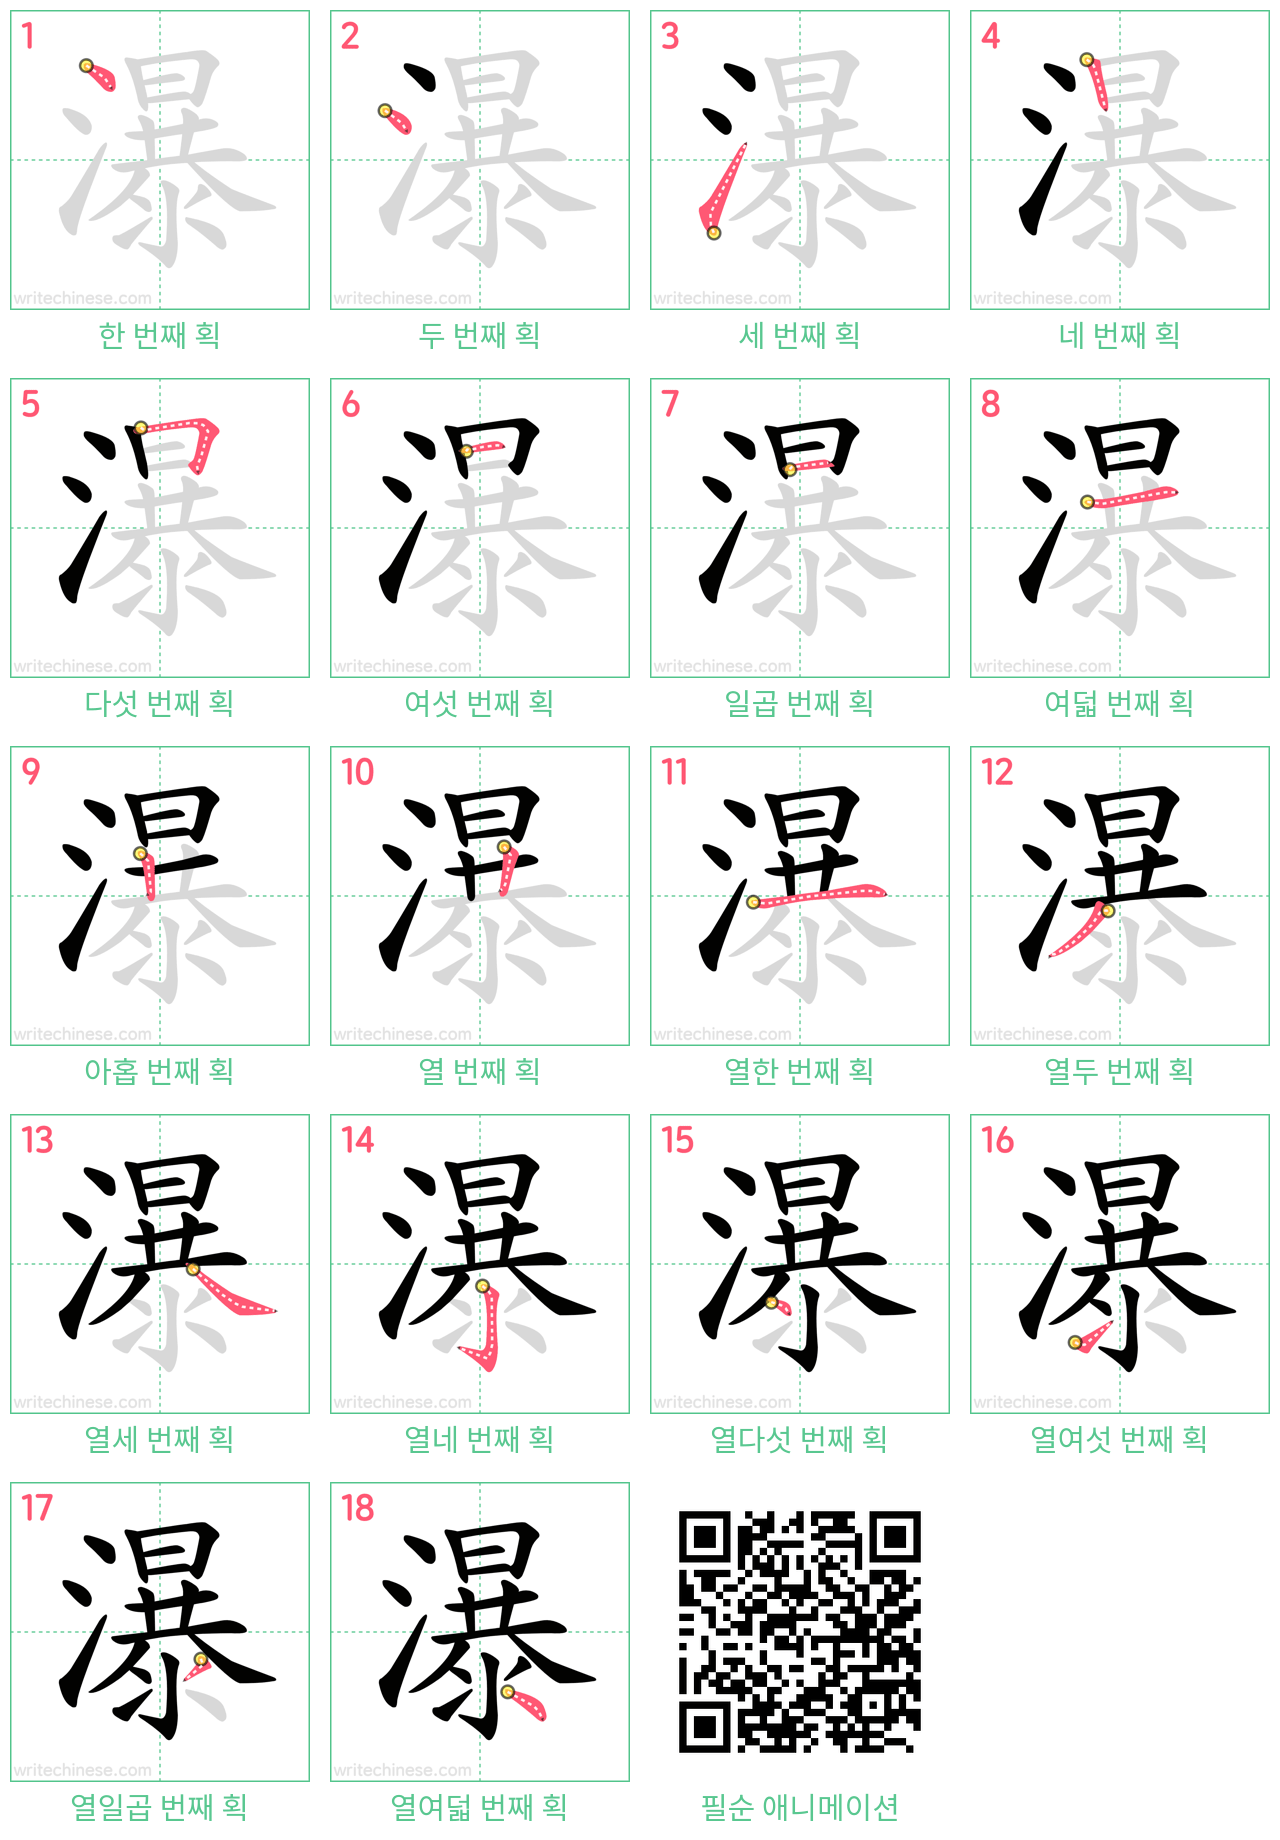 瀑 step-by-step stroke order diagrams